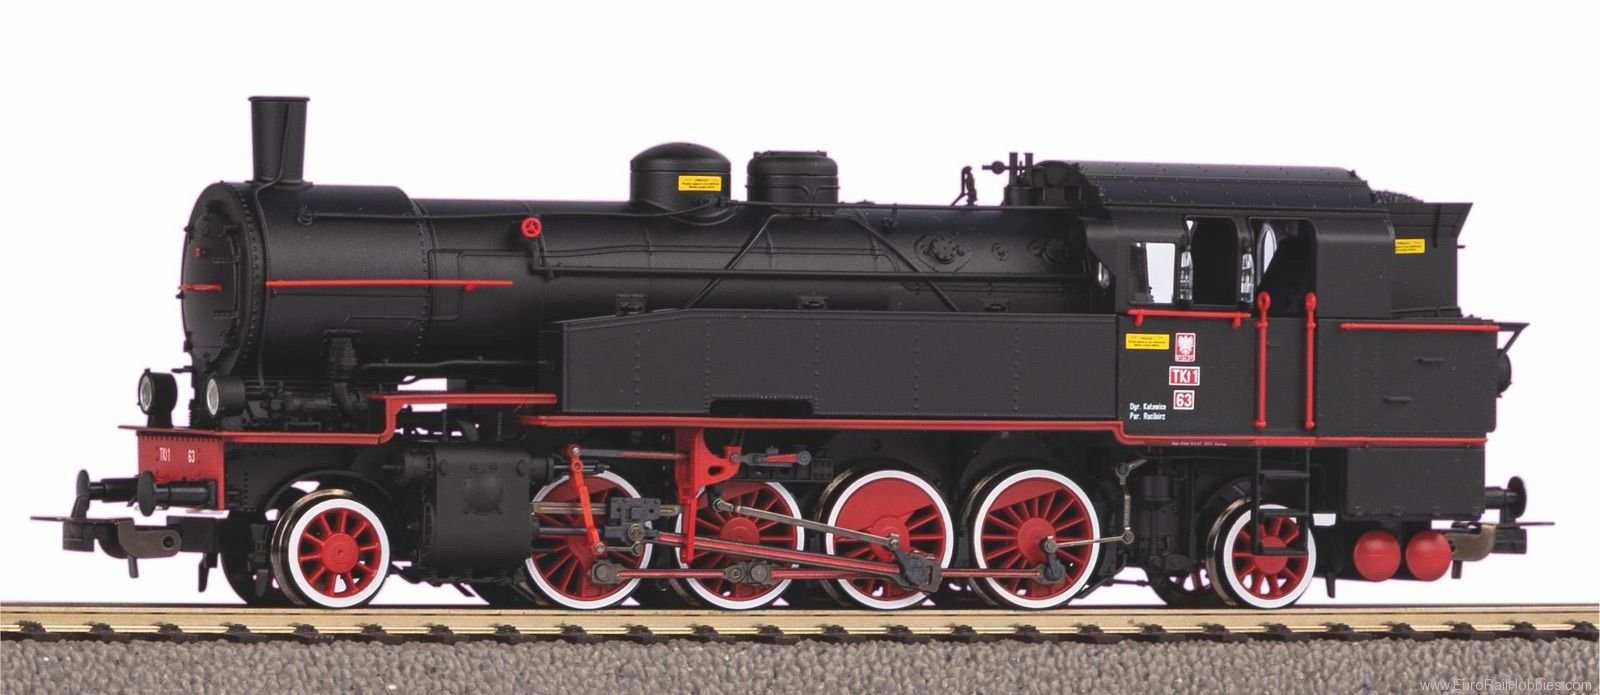 Piko 50661 Steam Locomotive Tkt1-63 PKP III (Piko Expert